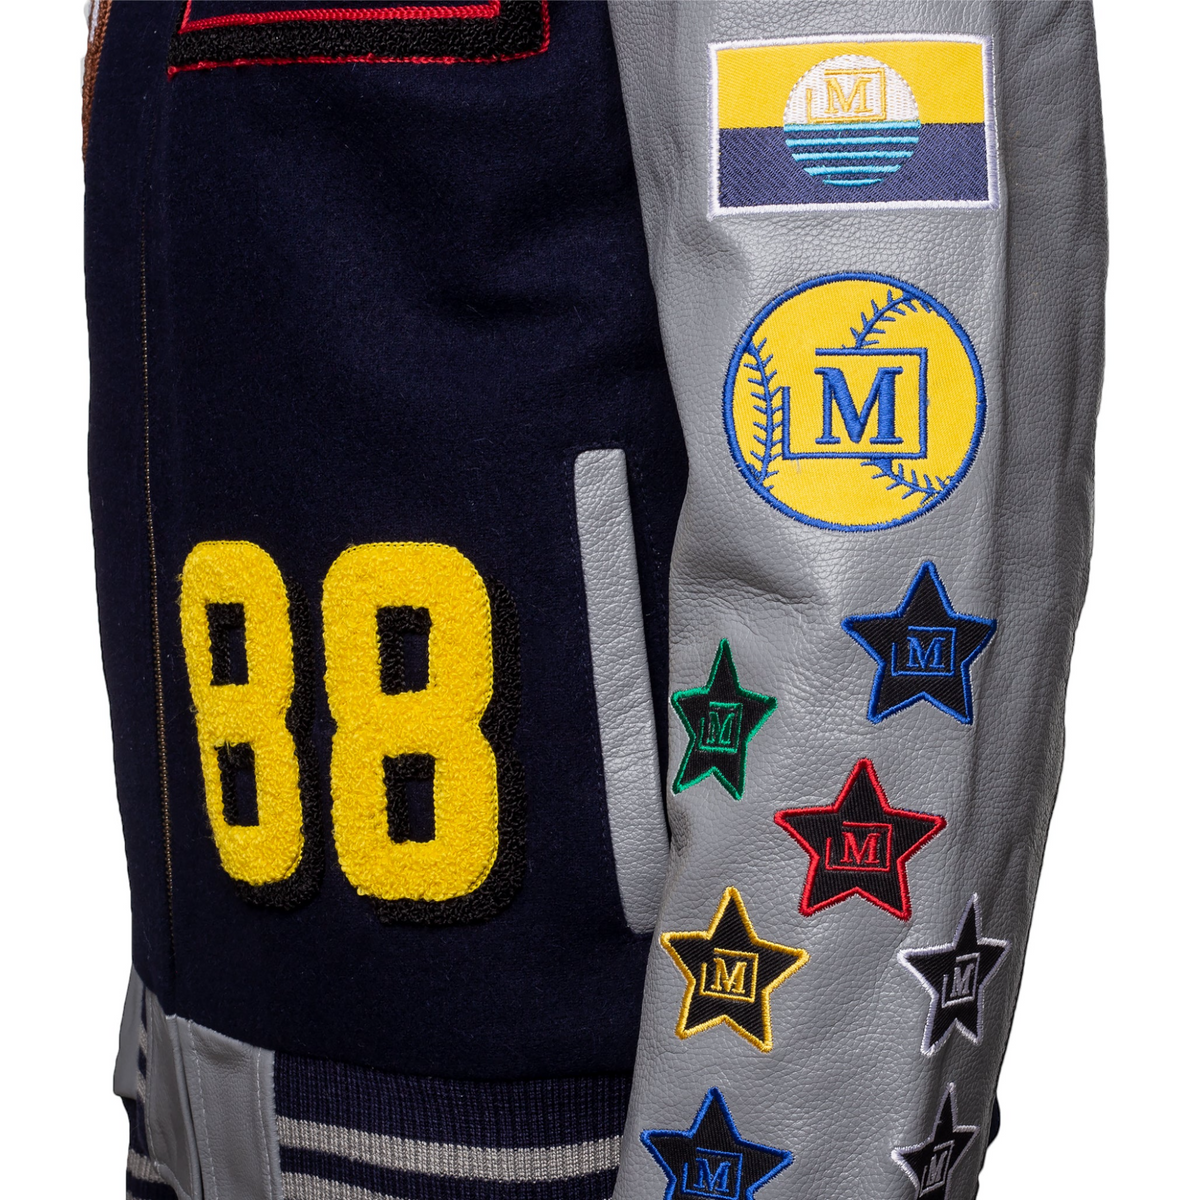 MDB Brand Men's Varsity Letterman Jacket V2 - Navy Blue and Grey